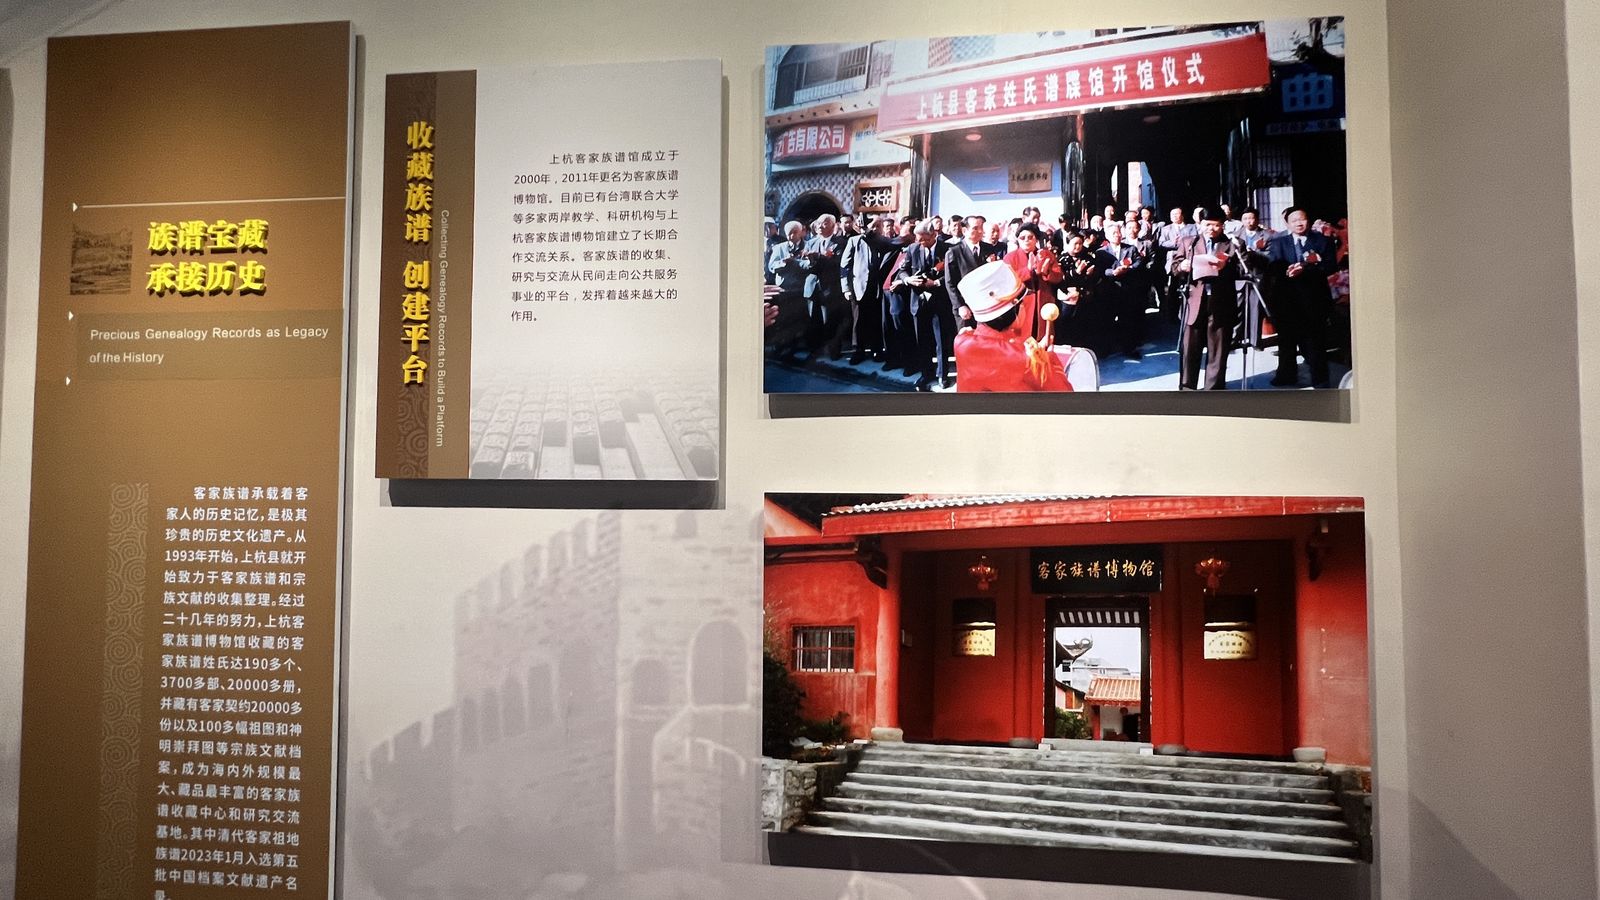 林志毅在上杭客家族譜博物館照片在展示牆上。